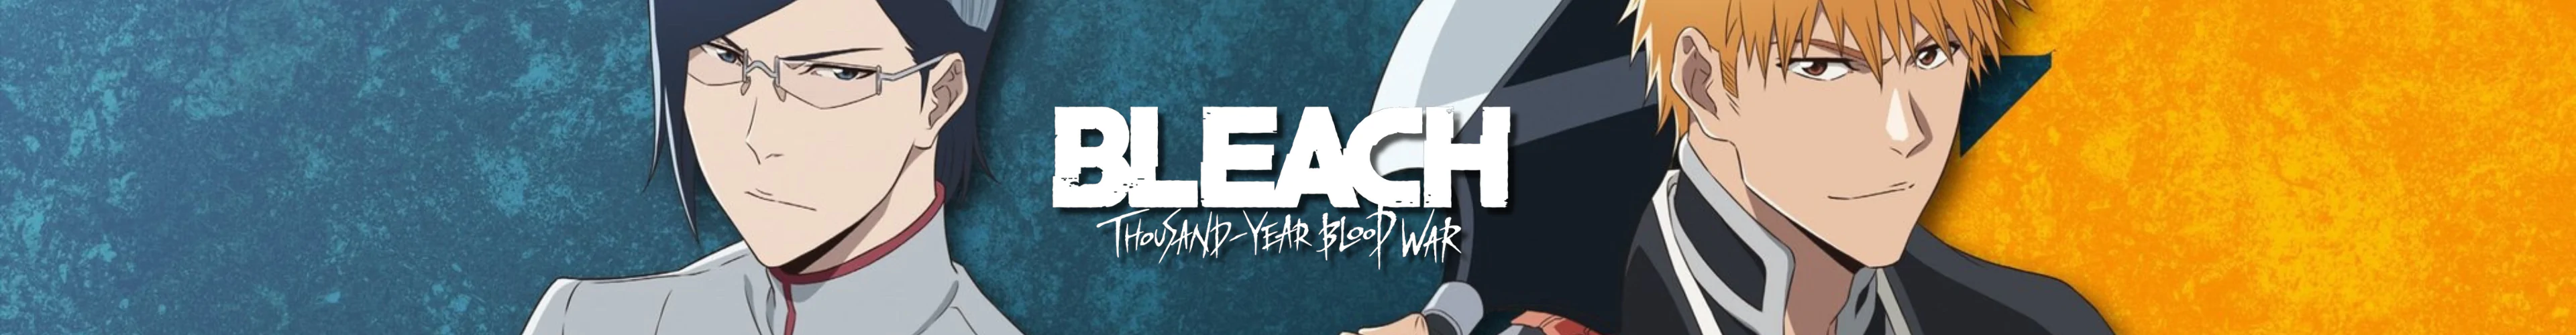 Bleach Produkte banner